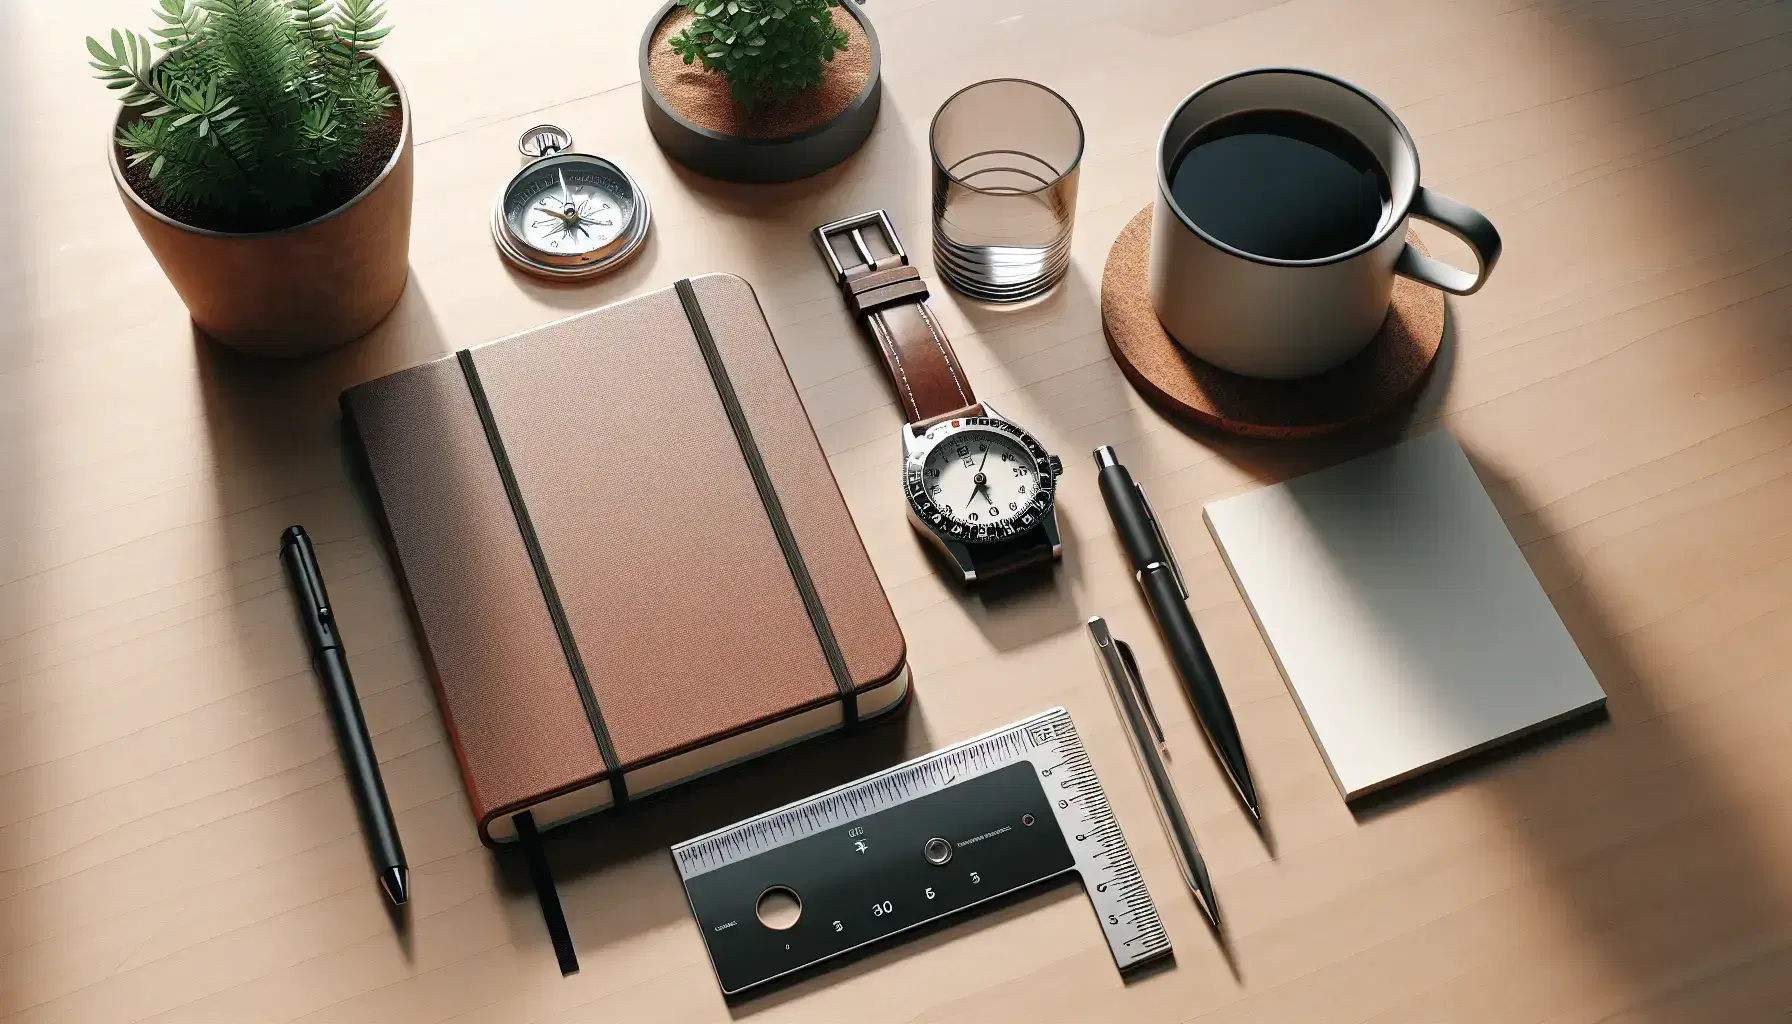 Mesa de madera con cuaderno de tapa dura, bolígrafo negro, regla transparente, compás metálico, reloj de pulsera, planta en maceta y taza de café sobre posavasos de corcho.